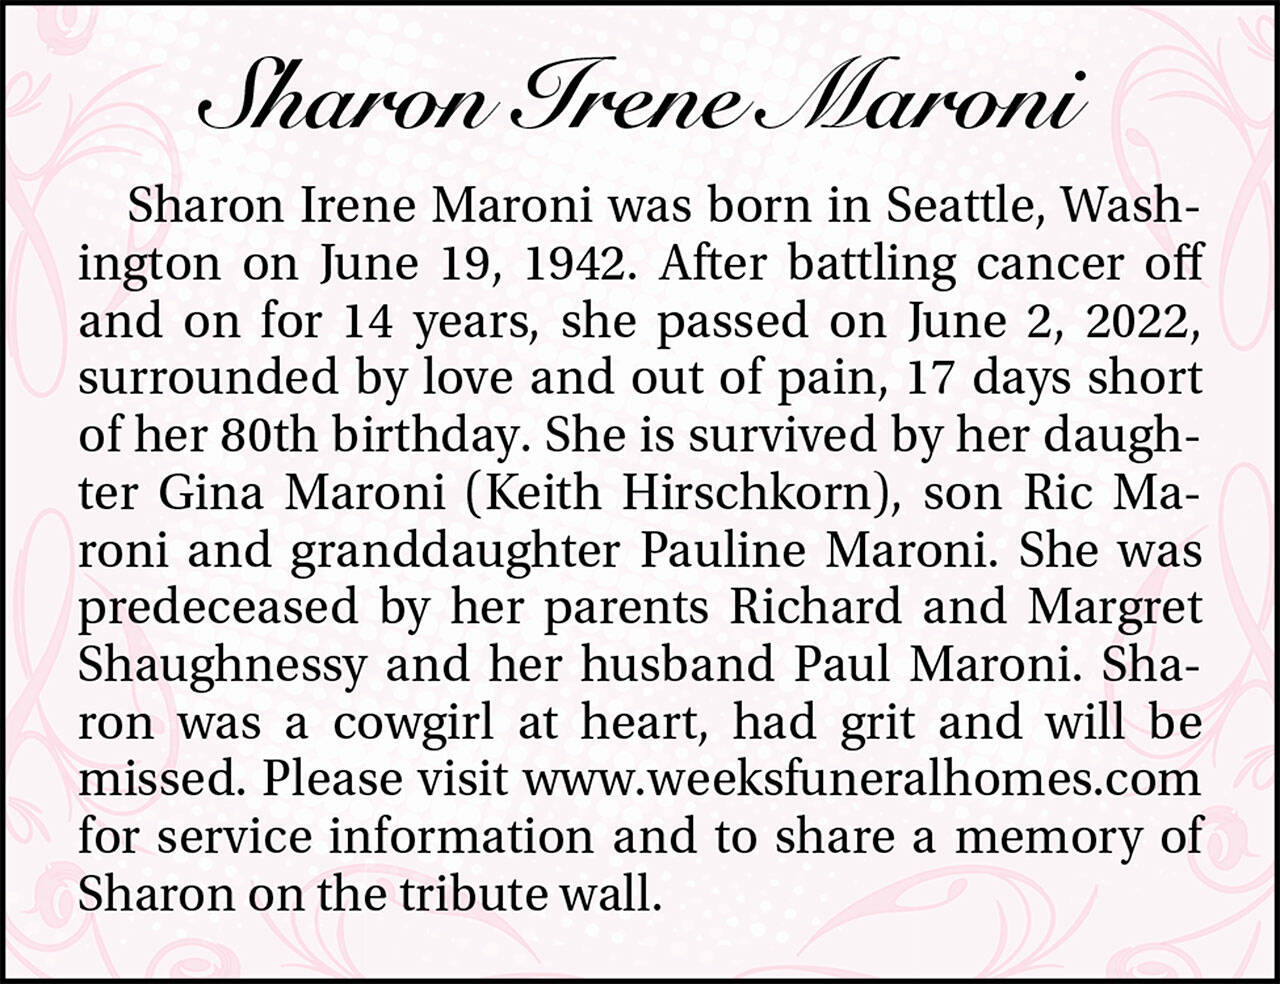 Sharon Maroni